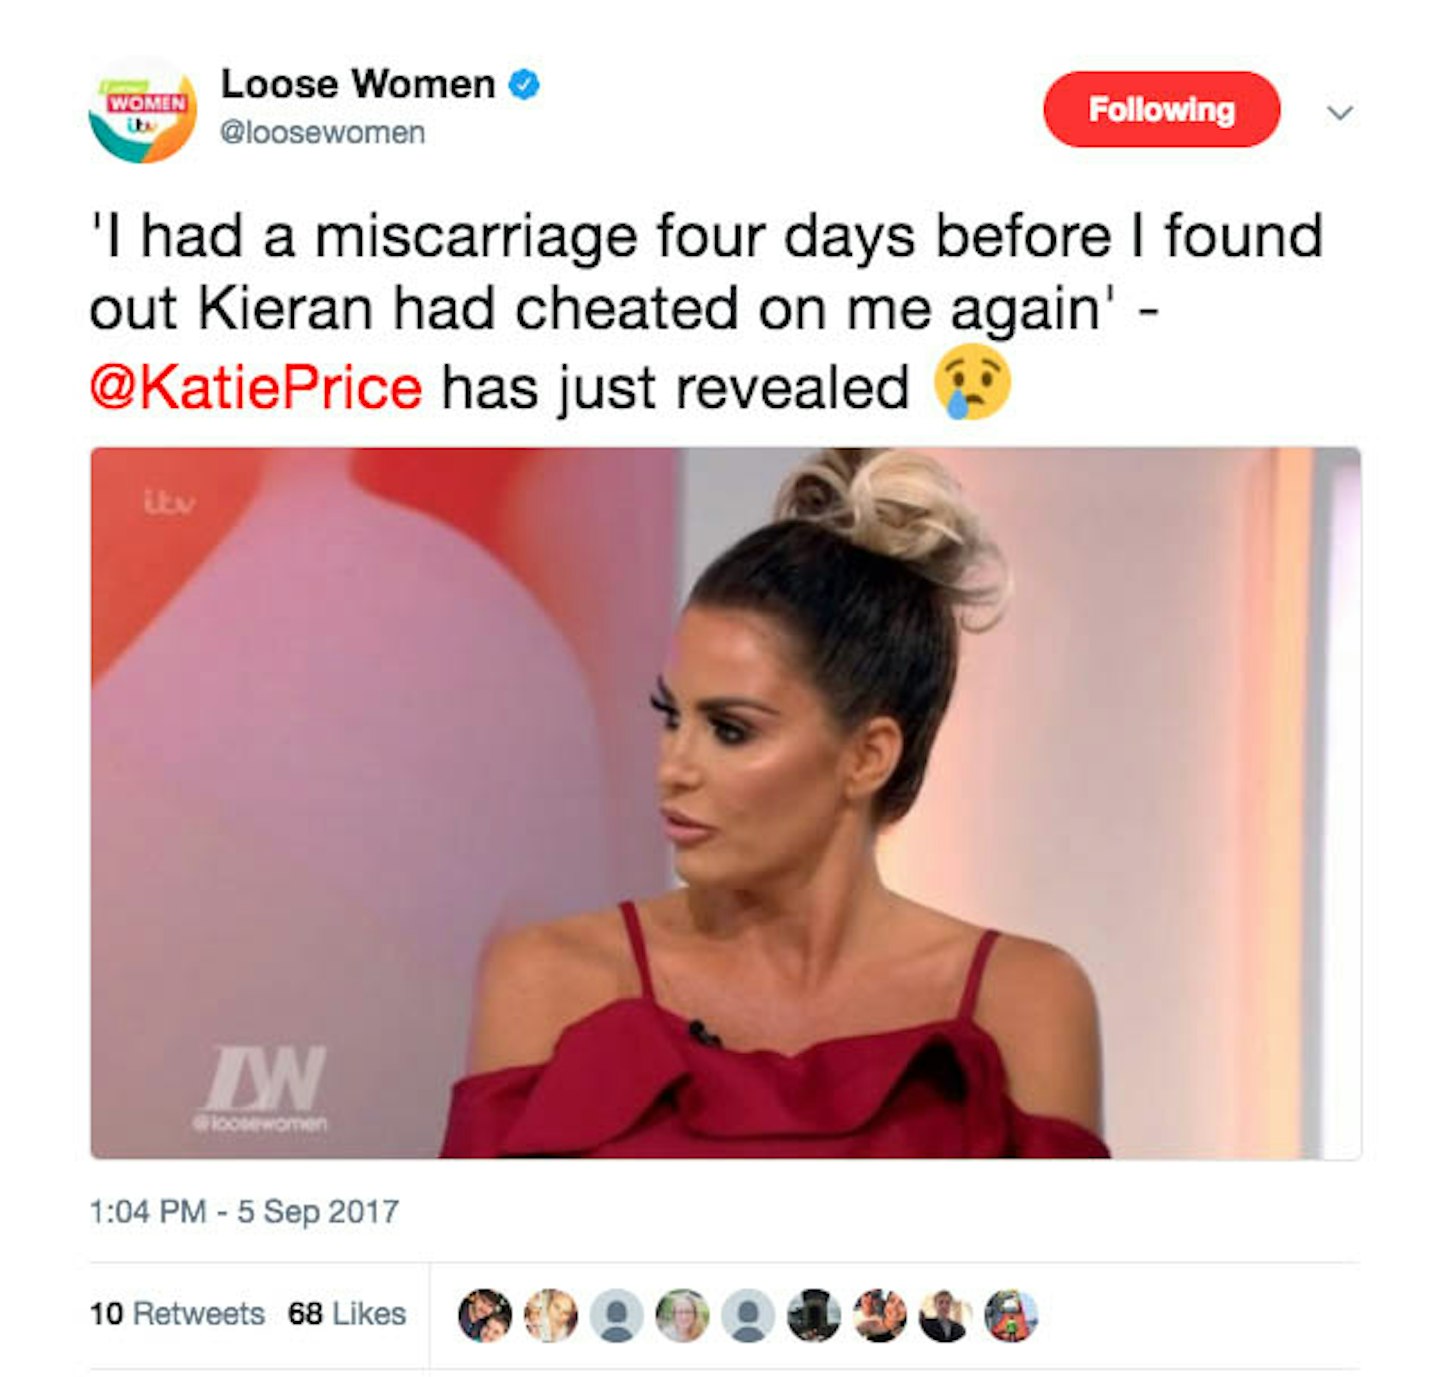 Loose Women Twitter